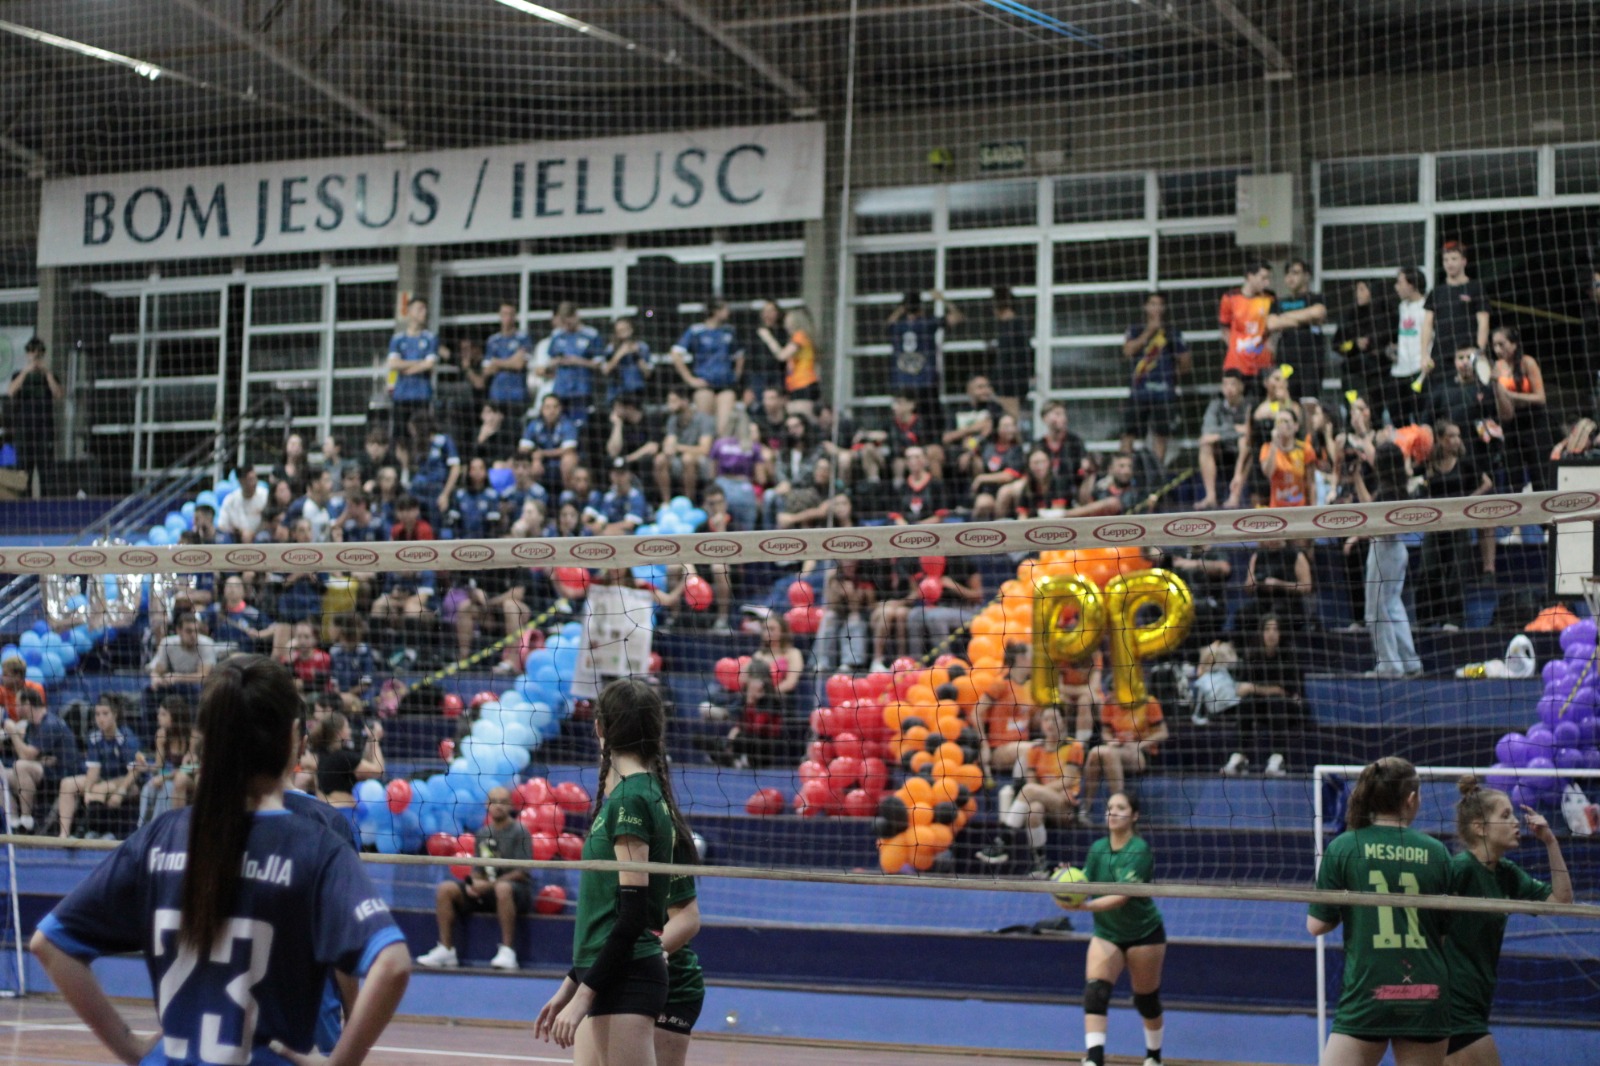 Atletas dos cursos de Nutrição, com camisas verdes, e Fonoaudiologia, com camisas azuis, em uma partida de vôlei no JIA. As equipes estão separadas por uma rede, e ao fundo estão as torcidas.